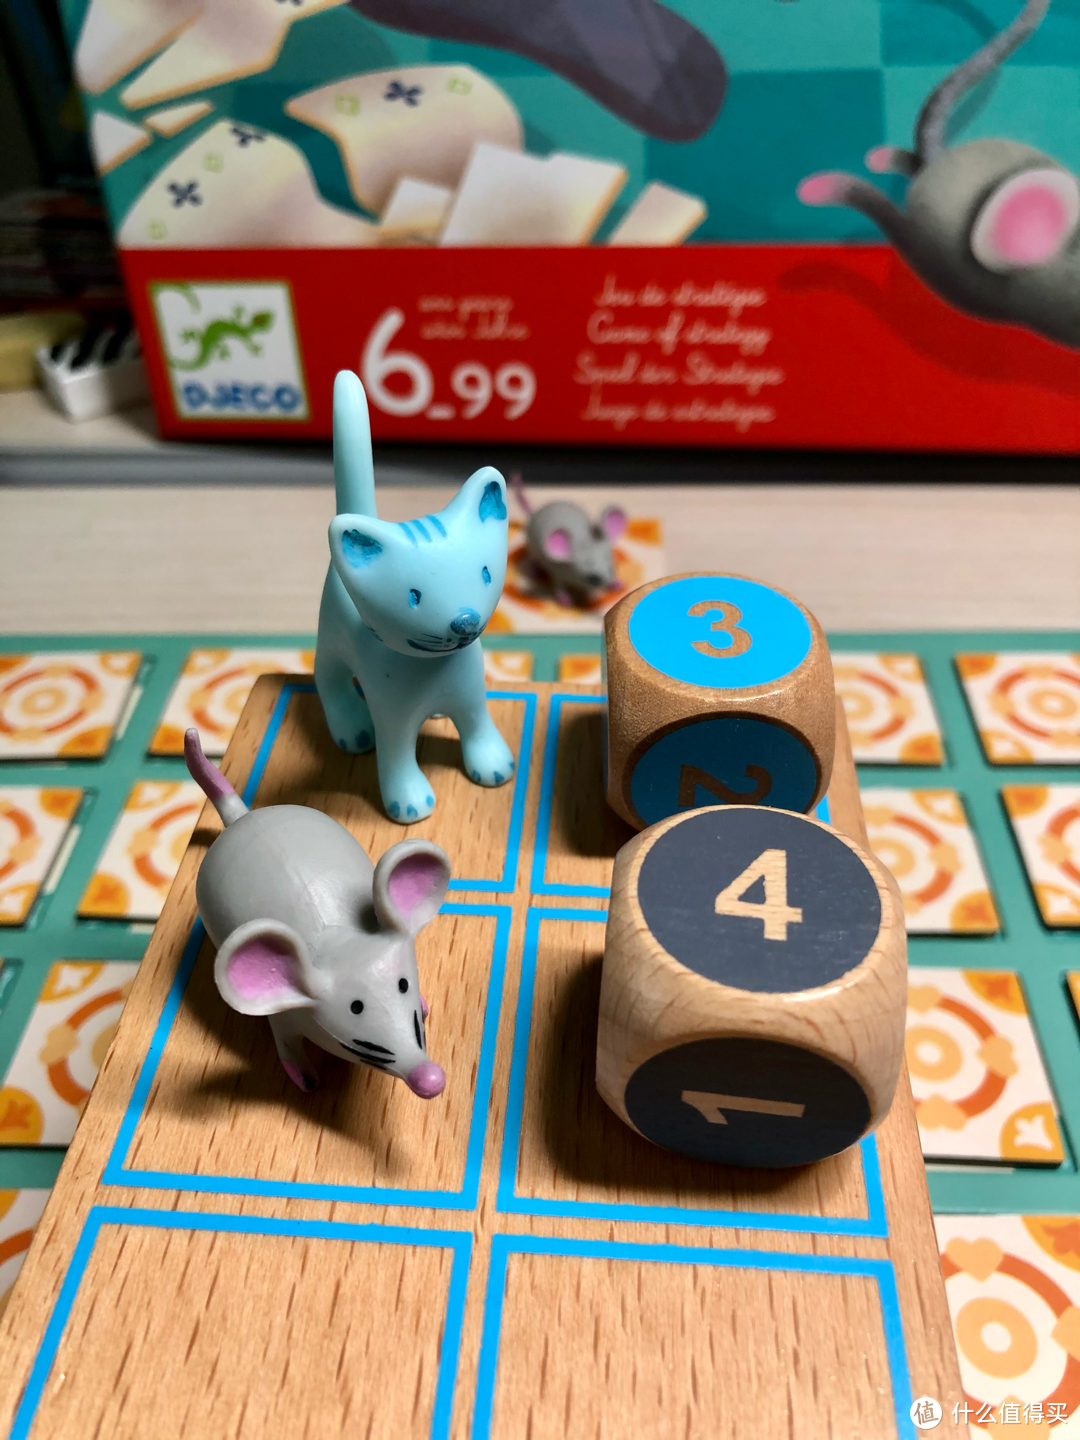 老鼠和猫咪都有自己专属的骰子，老鼠最大点数是4，猫咪则是3，以此来保证游戏平衡